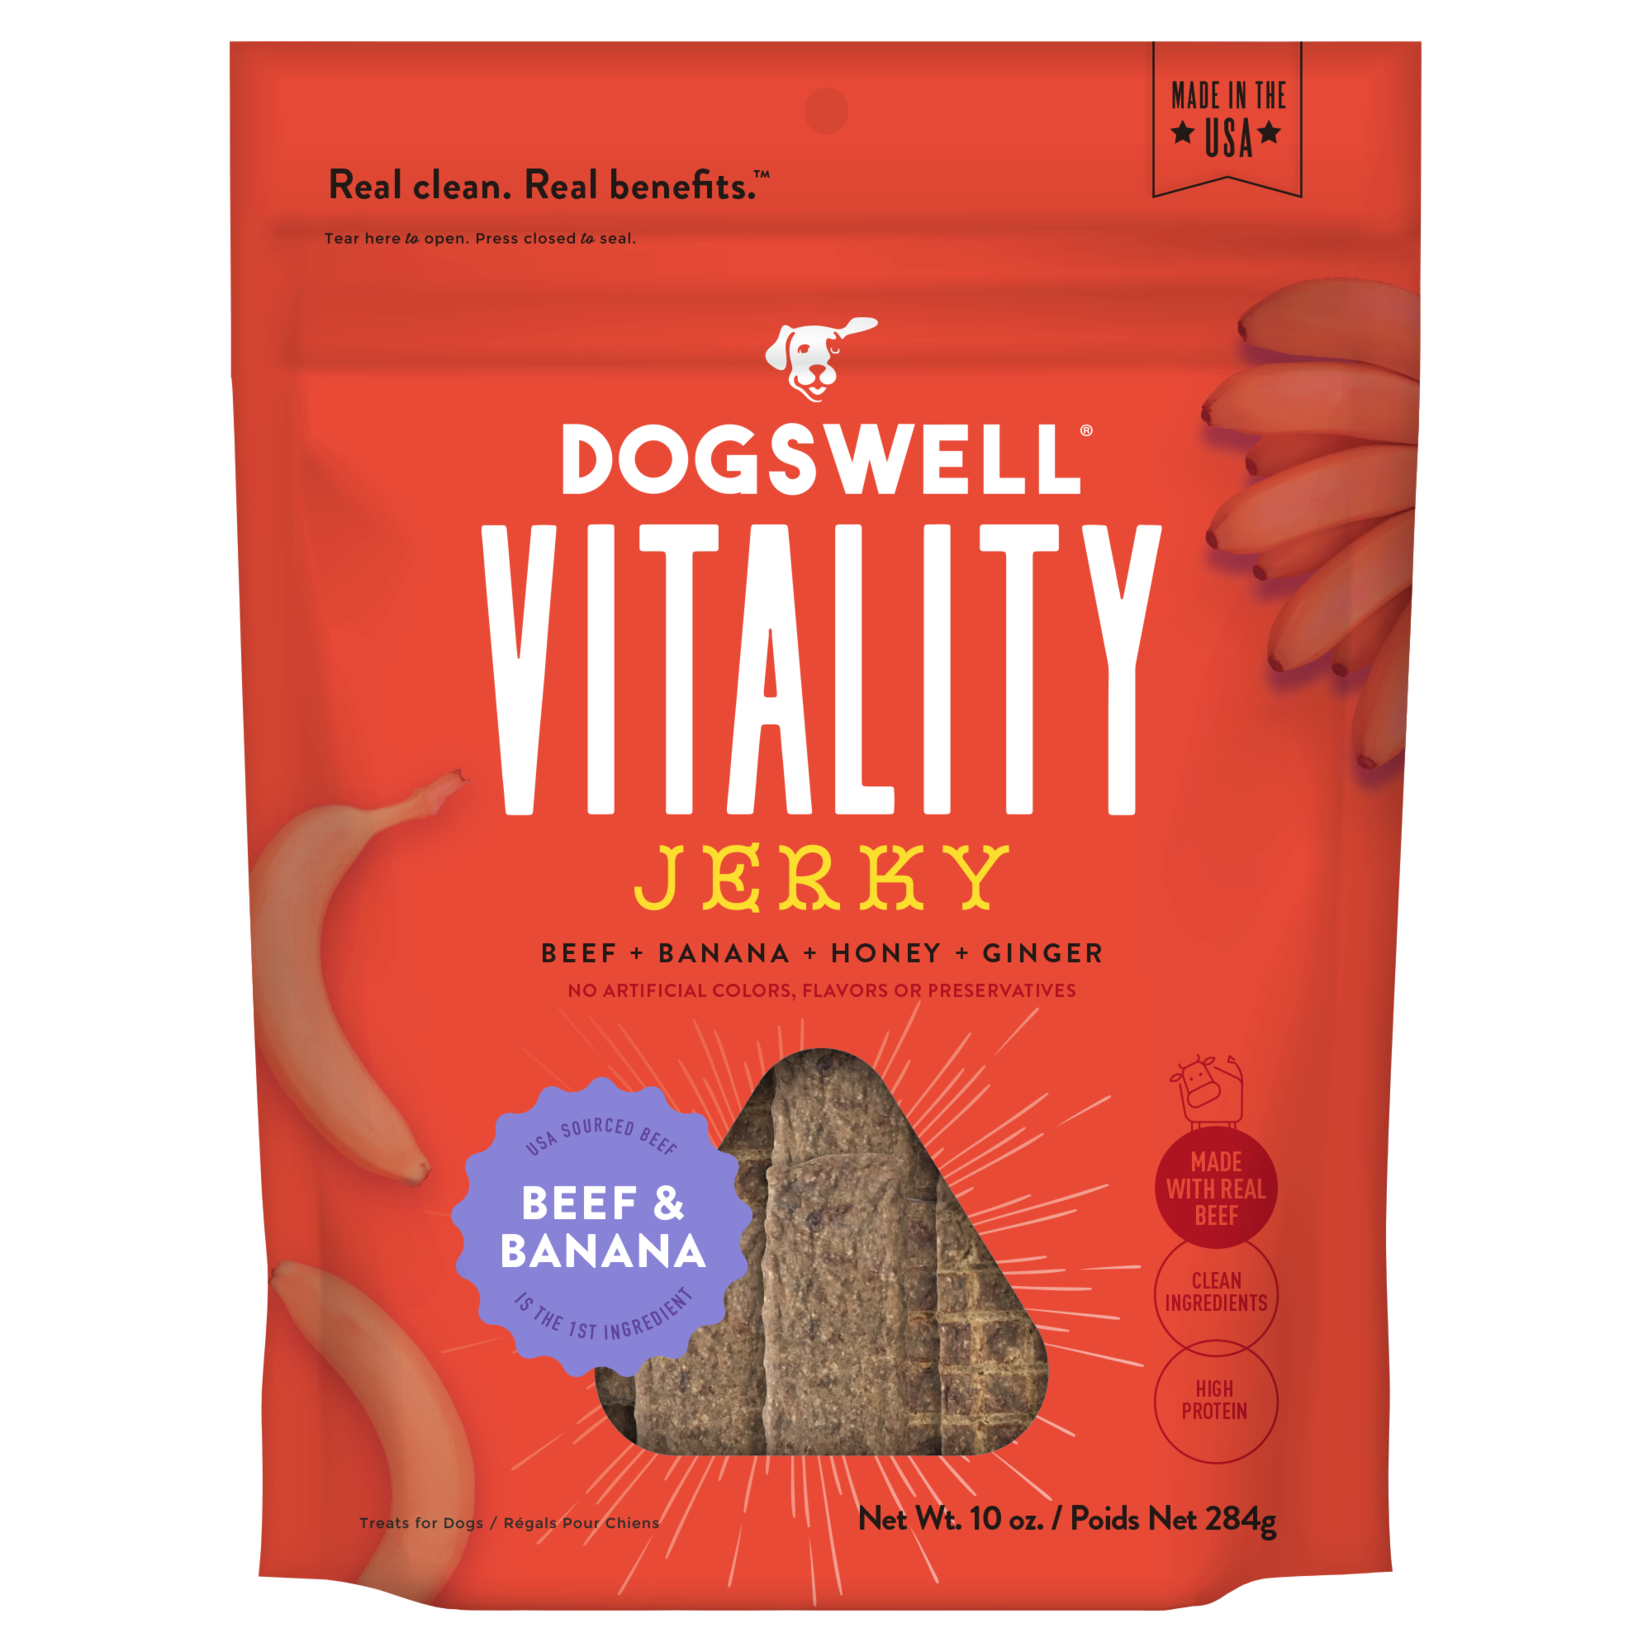 Dogswell Vitality Beef & Banana Jerky